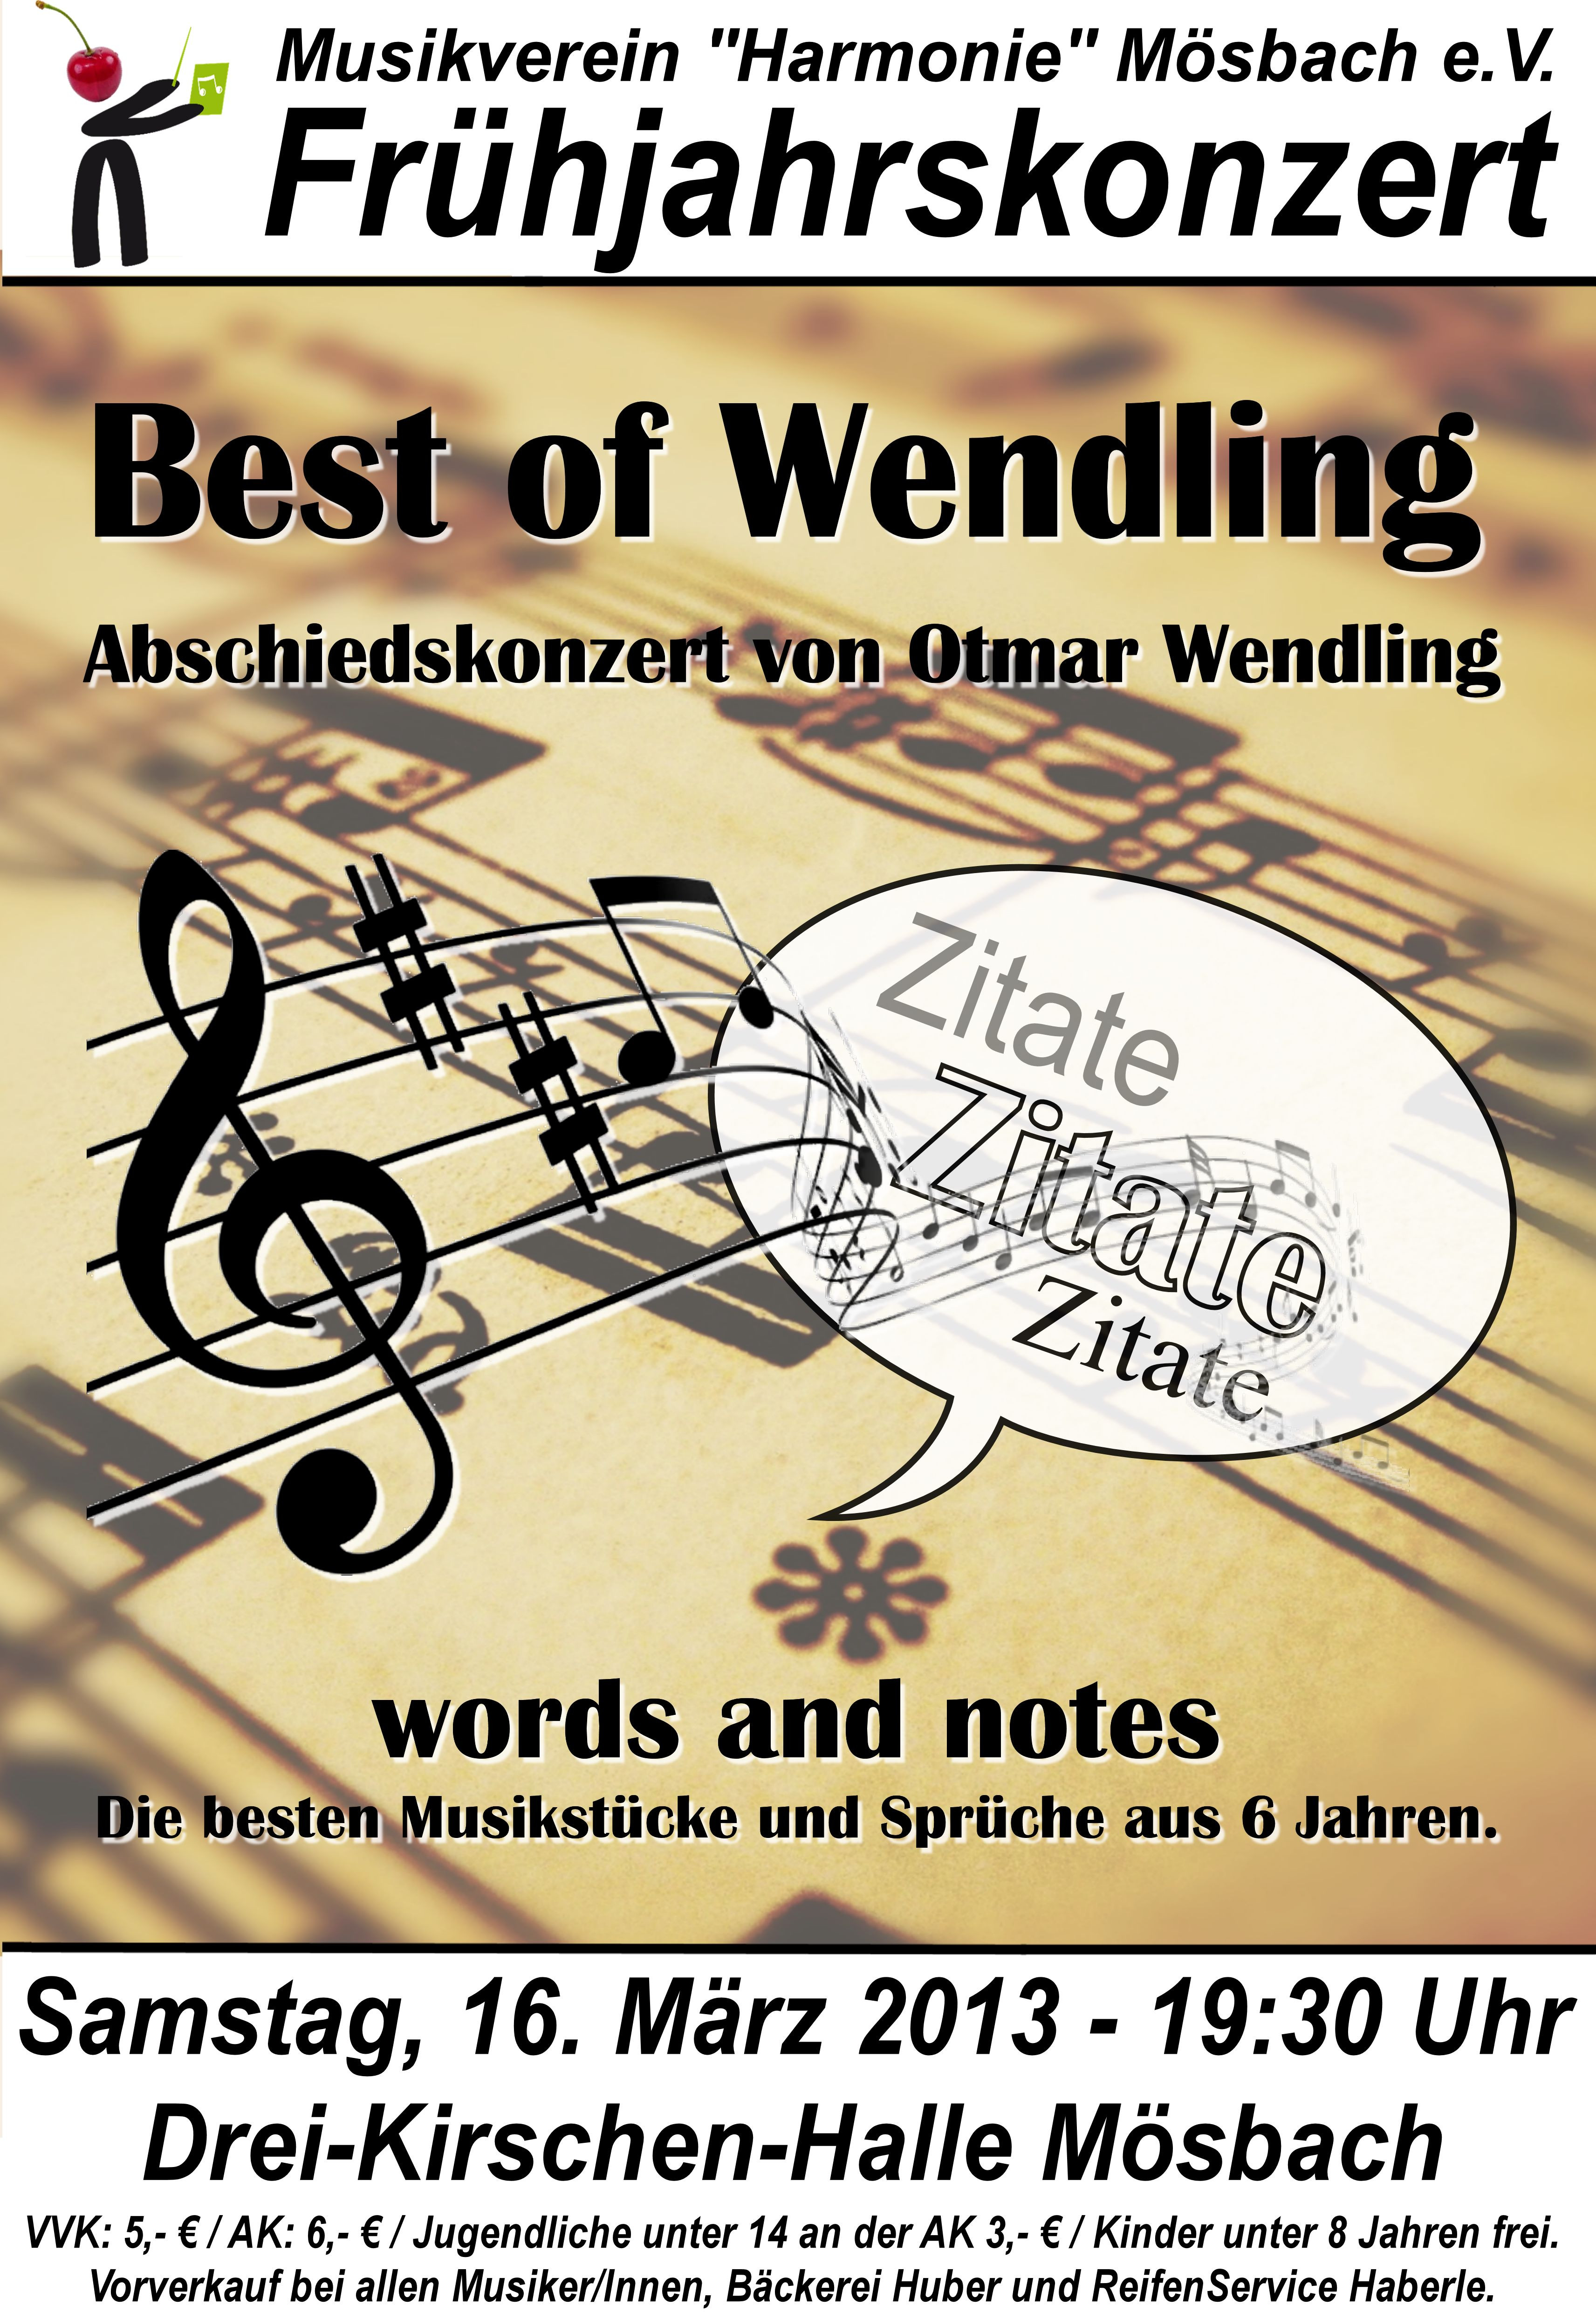 Heinz Erhardt Gedicht Hochzeit
 Elegant Goldene Hochzeit Gedicht Heinz Erhardt – Schmuck